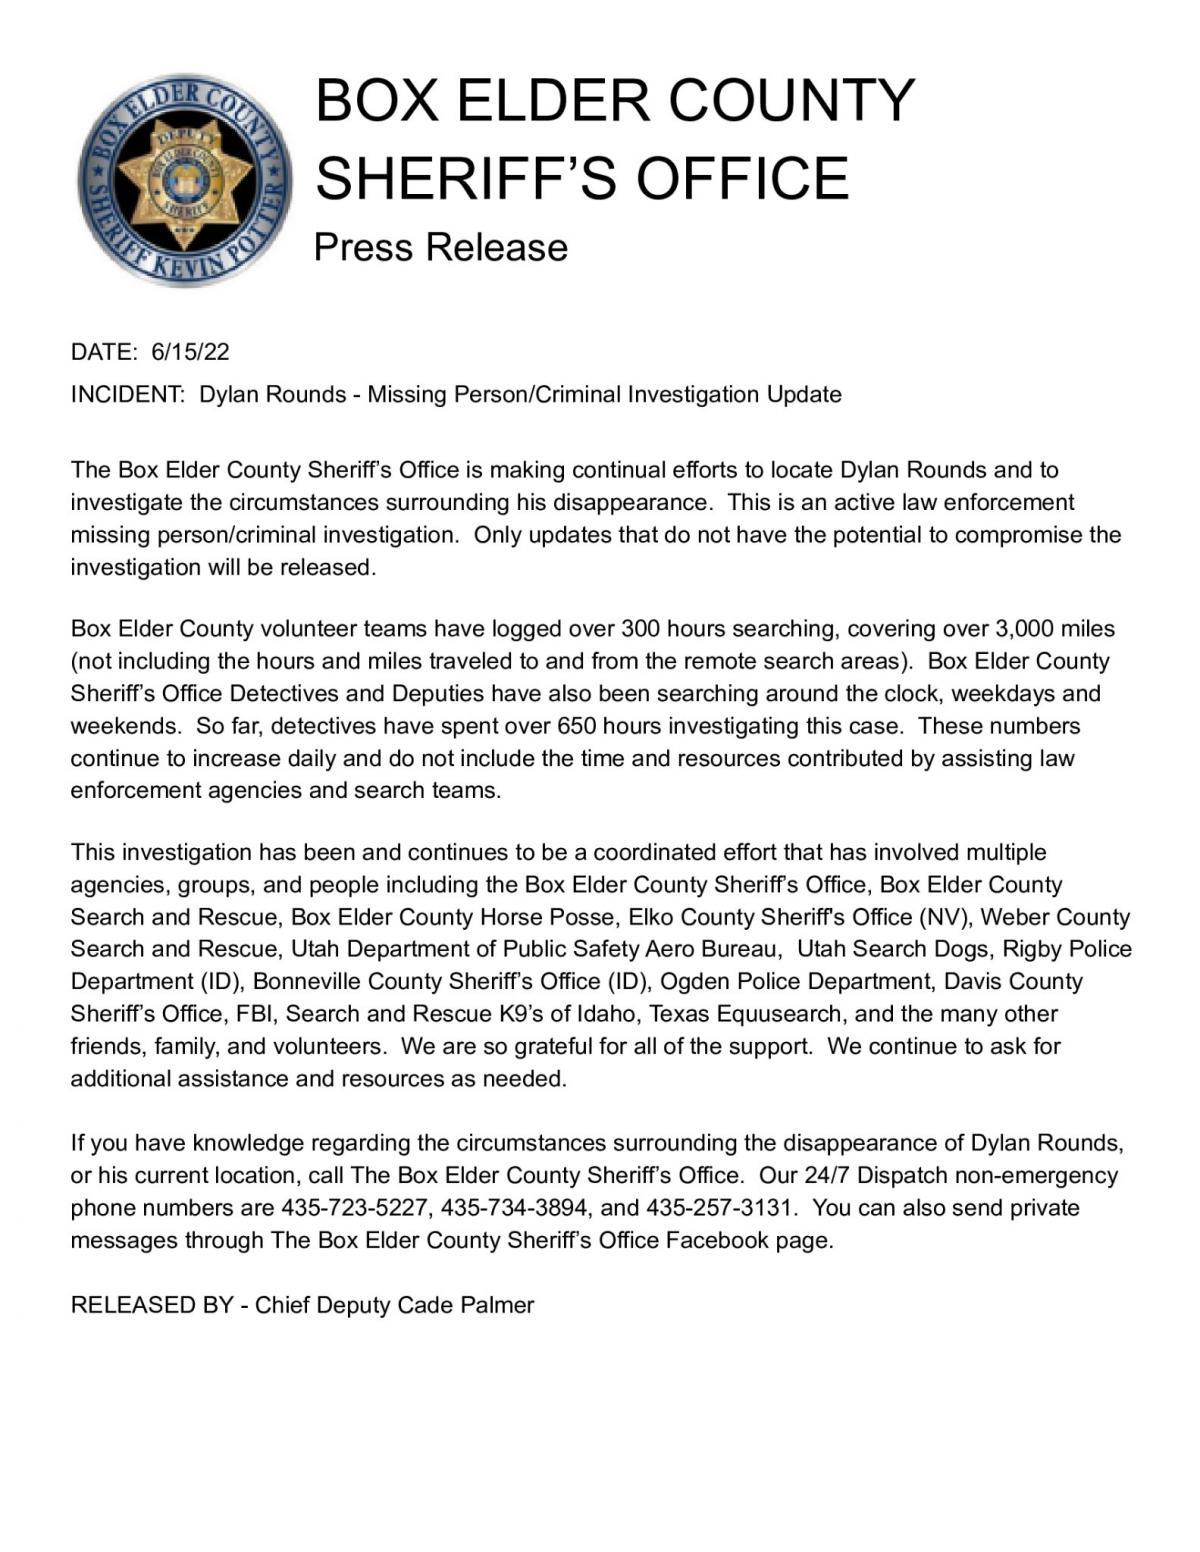 Press Release from Box Elder County Sheriffs Office 